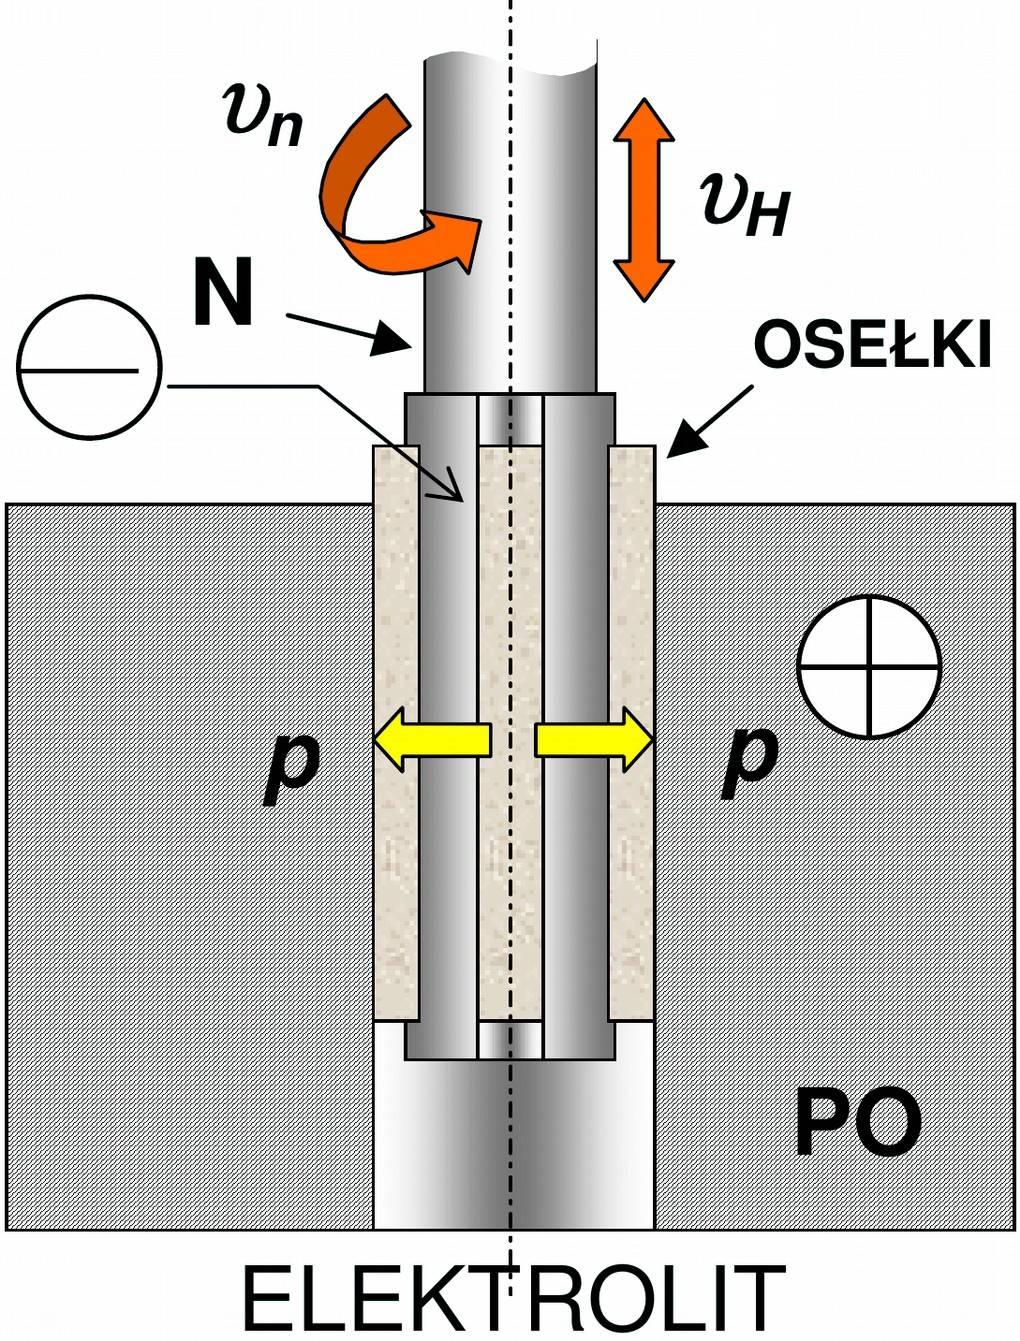 POLEROWANIE HYBRYDOWE Techniki hybrydowe obróbki dokładnościowo-gładkościowej polegają na łączeniu różnych technik. Jako przykłady można podać szlifowanie oraz honowanie elektrochemiczne.